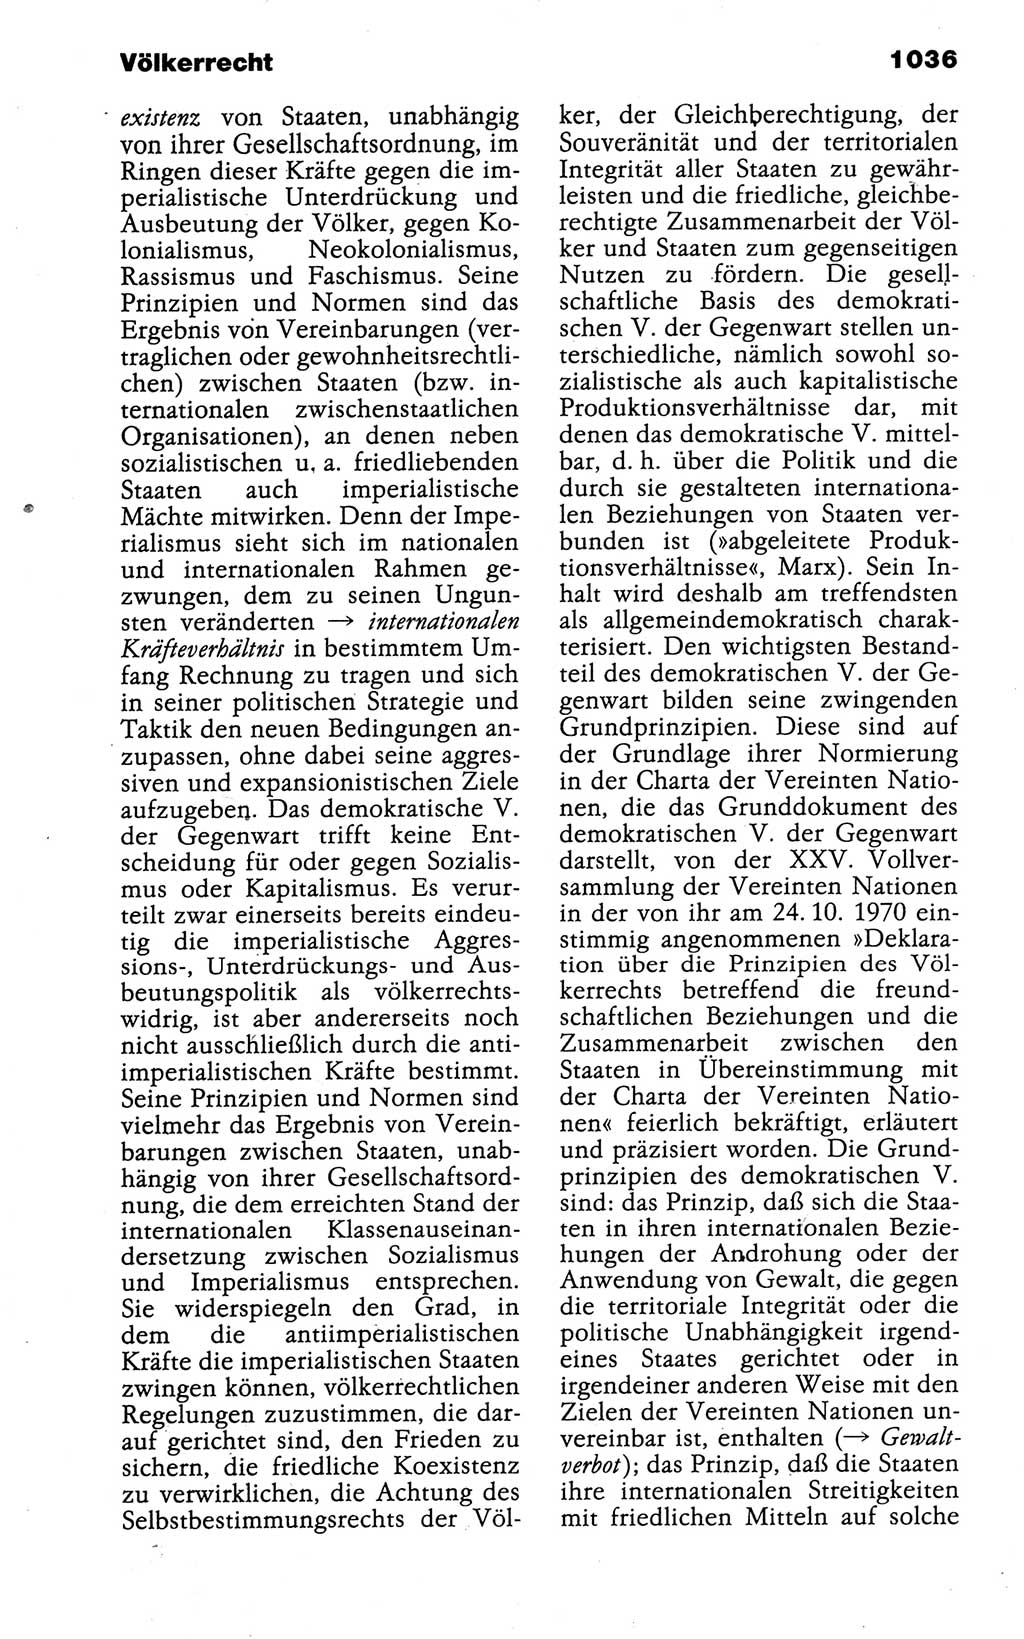 Kleines politisches Wörterbuch [Deutsche Demokratische Republik (DDR)] 1988, Seite 1036 (Kl. pol. Wb. DDR 1988, S. 1036)